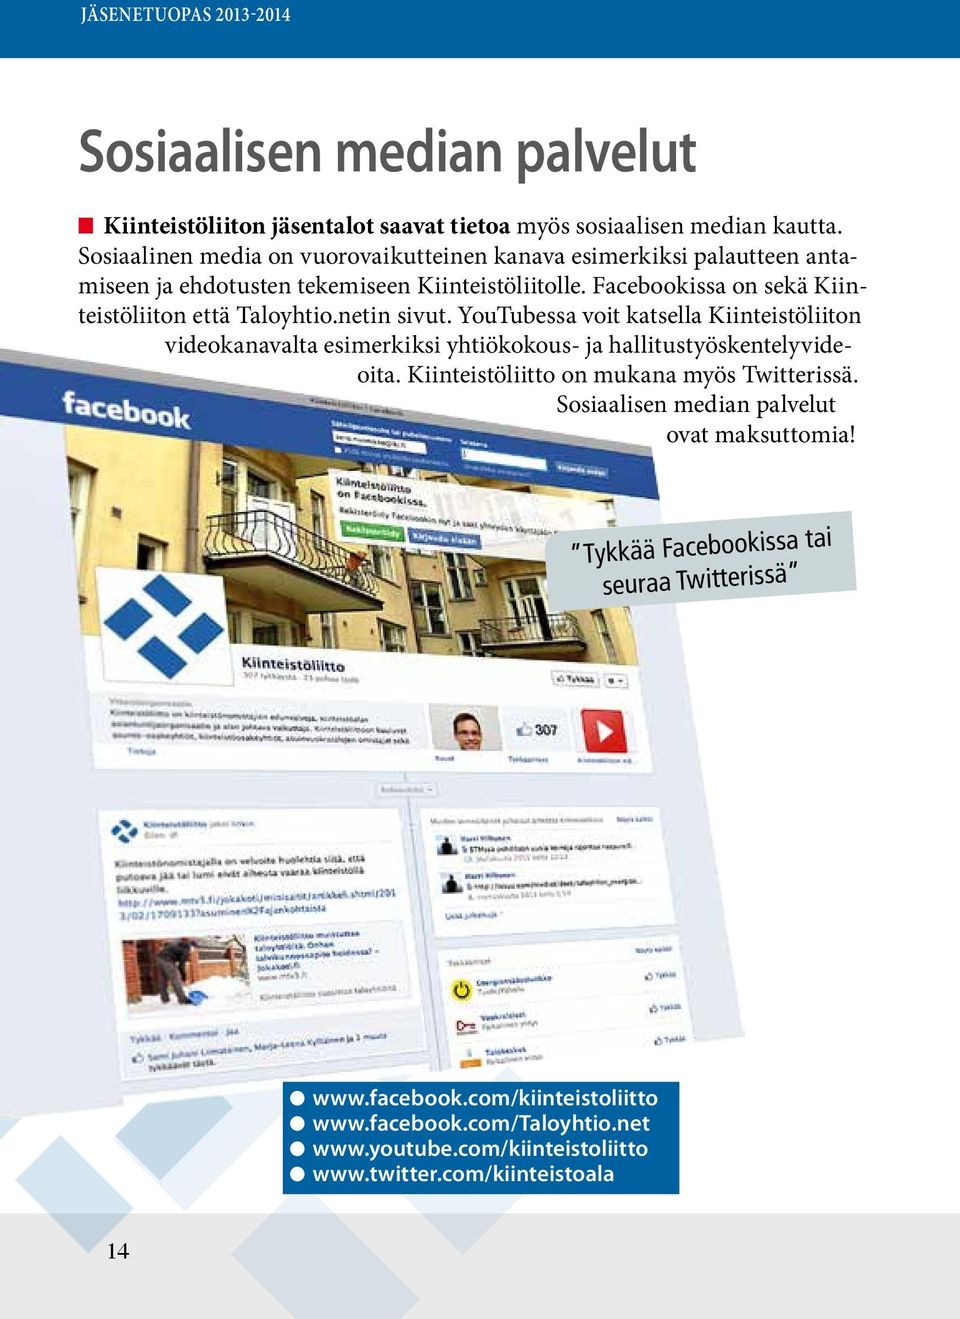 Facebookissa on sekä Kiinteistöliiton että Taloyhtio.netin sivut.